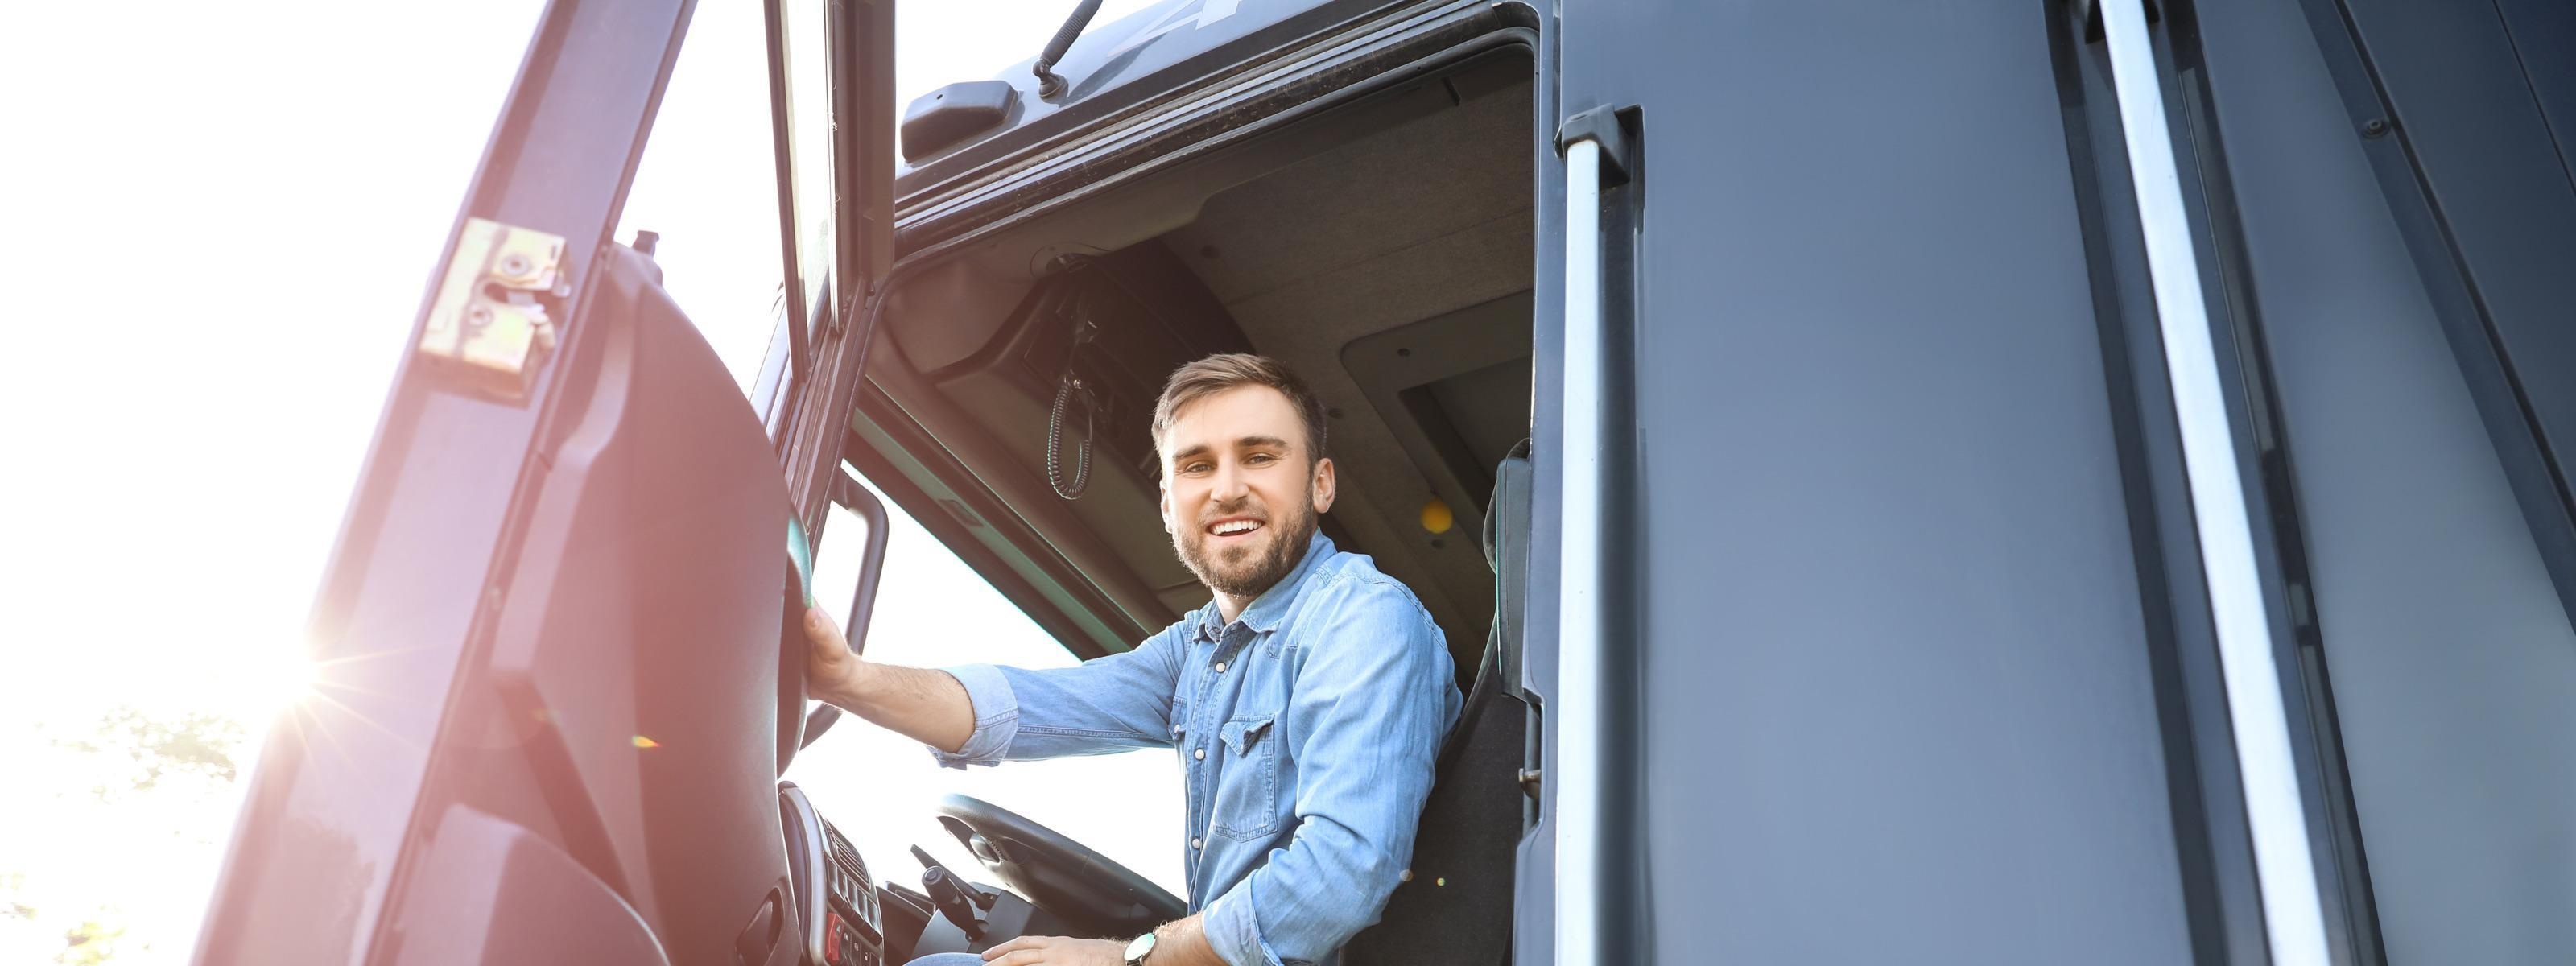 Lächelnde Person sitzt hinter Steuerrad eines LKWs und blickt aus geöffneter Türe